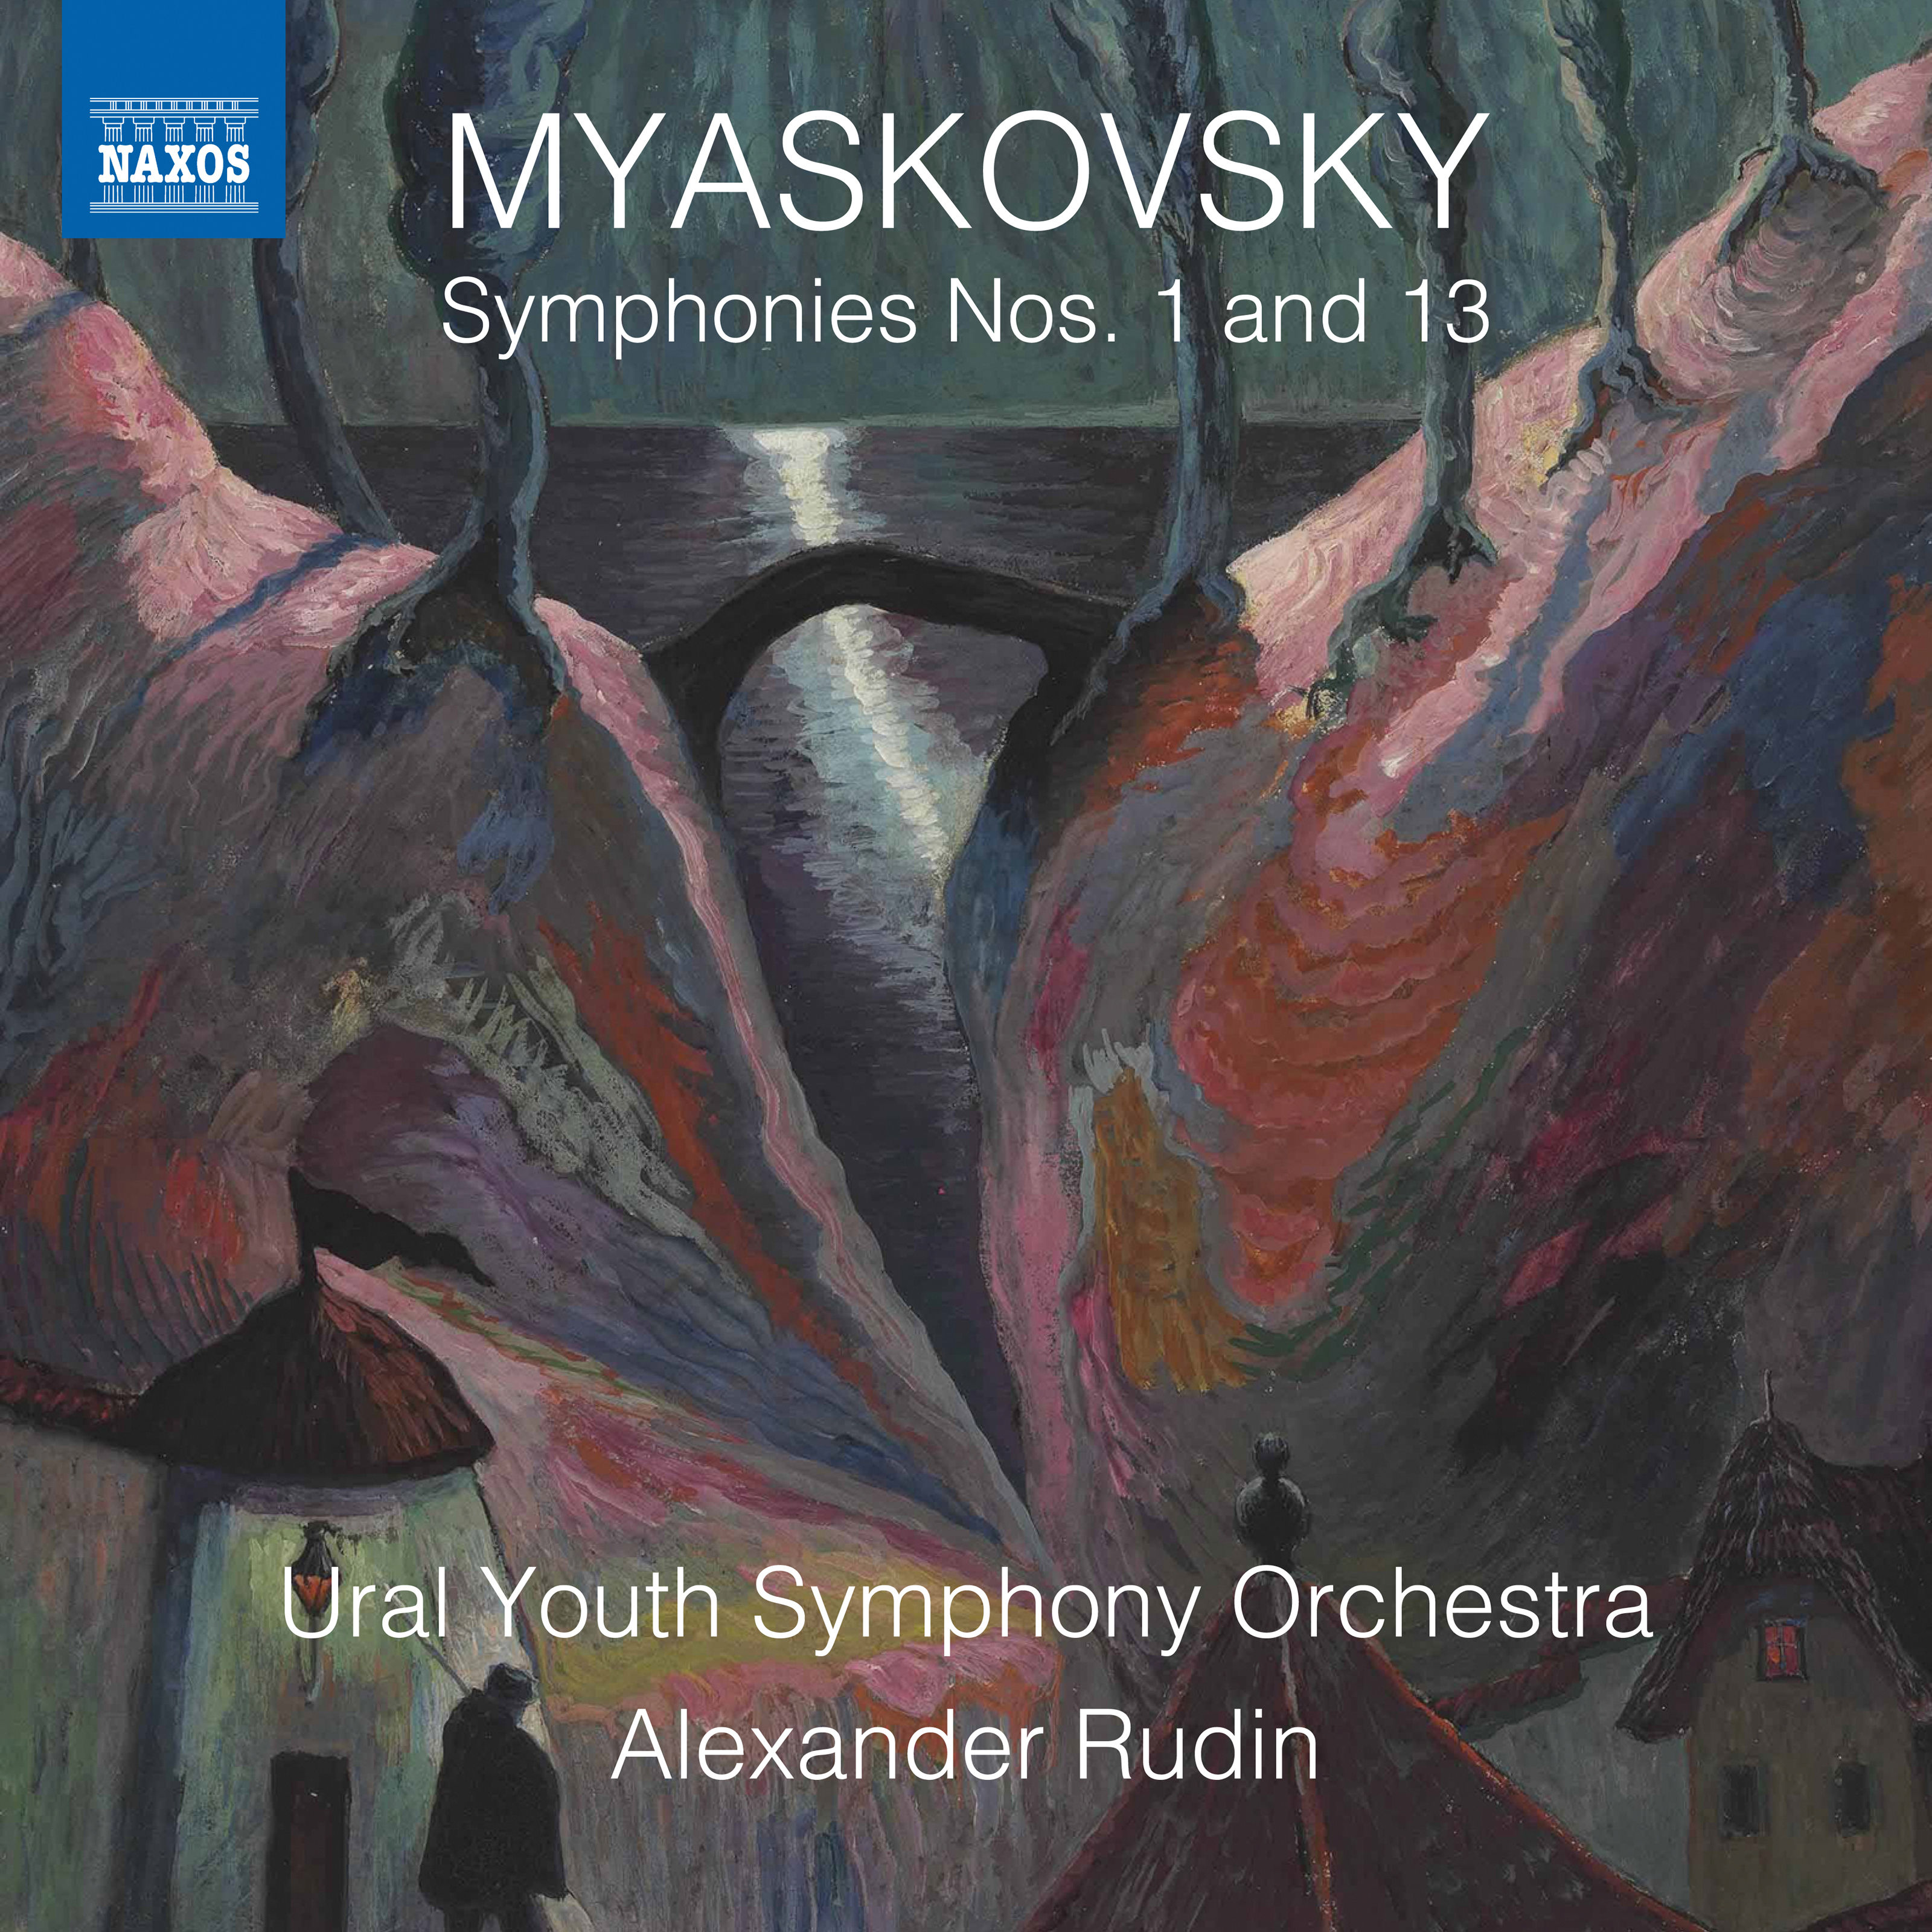 Ural Youth Symphony Orchestra, Alexander Rudin - Myaskovsky: Symphonies Nos. 1 & 13 (2019) [FLAC 24bit/96kHz]